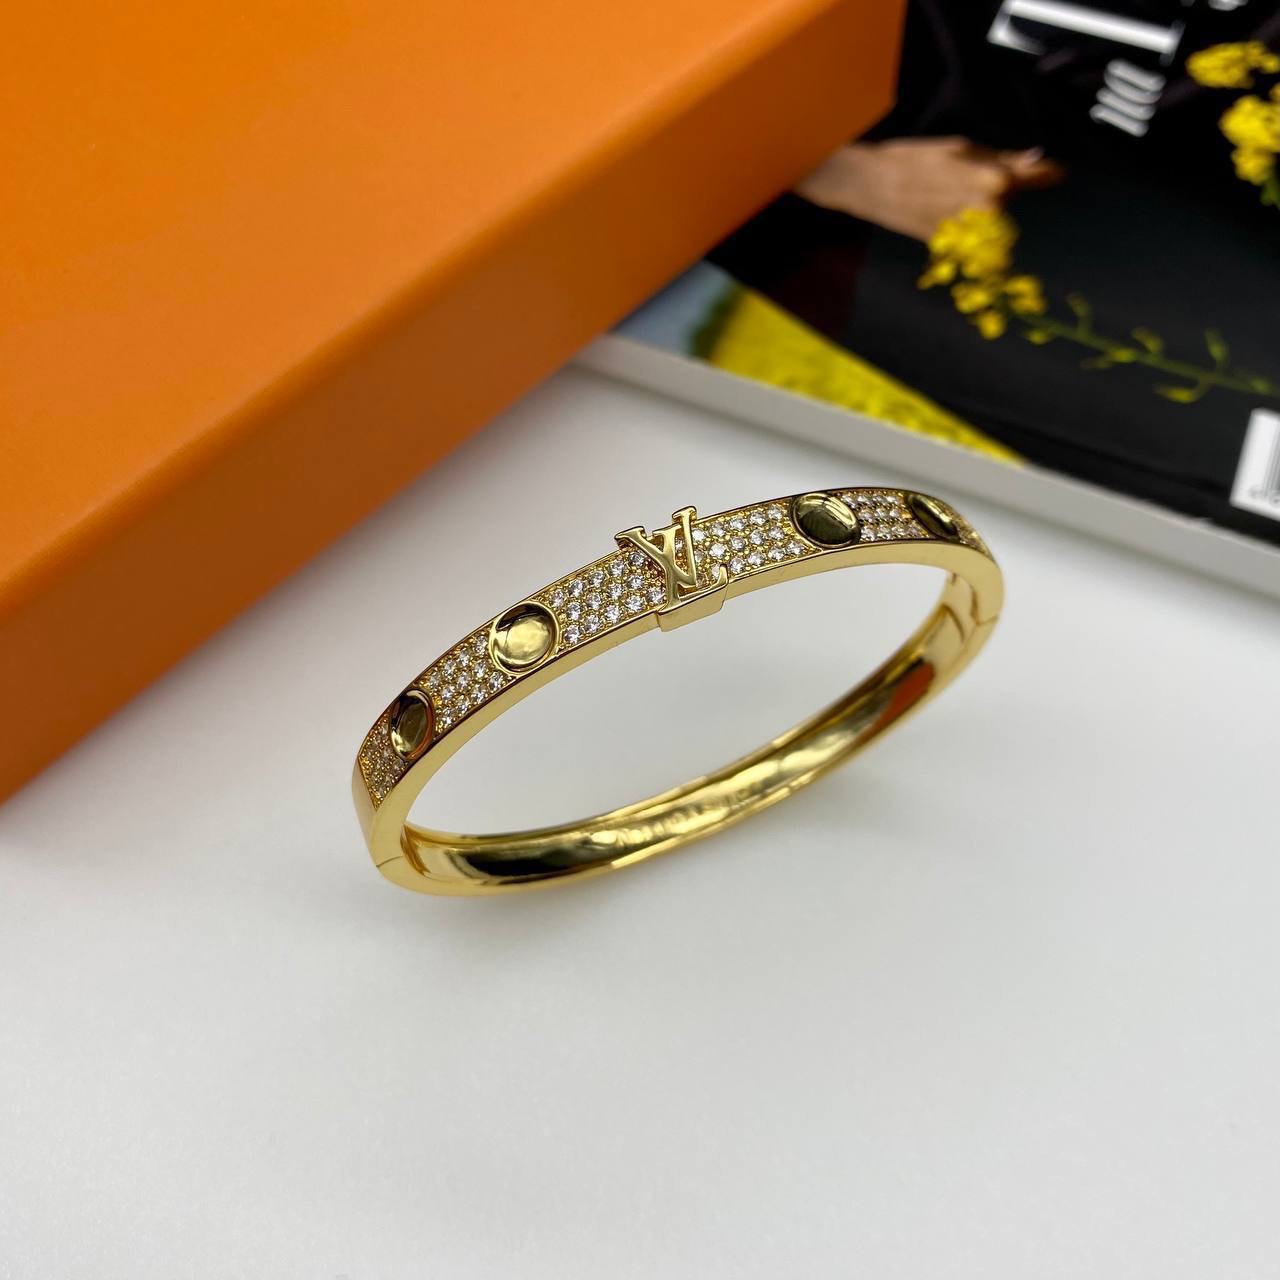 Купить женский браслет Louis Vuitton Луи Виттон в интернетмагазине   Snikco